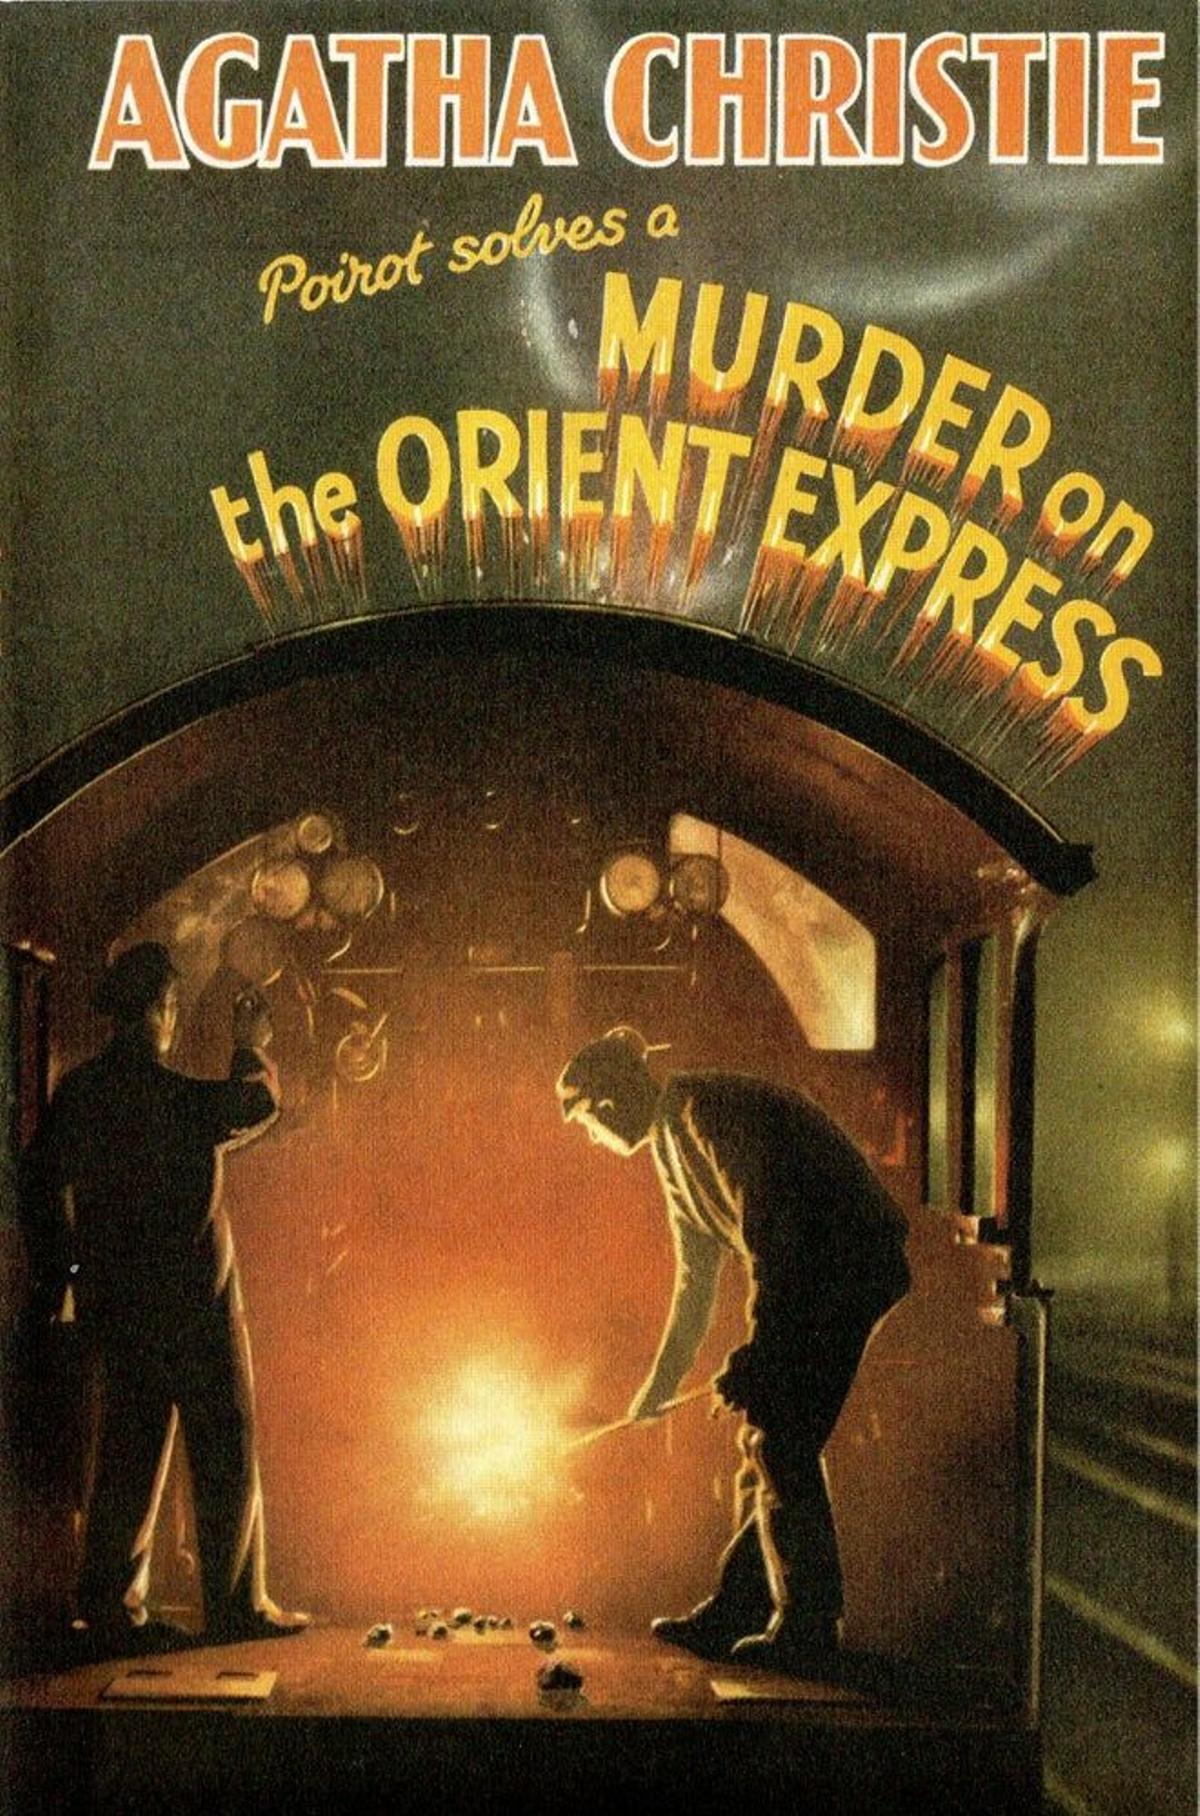 Escritora de 66 novelas de misterio, Agatha Christie siempre se sintió fascinada por el Orient Express.